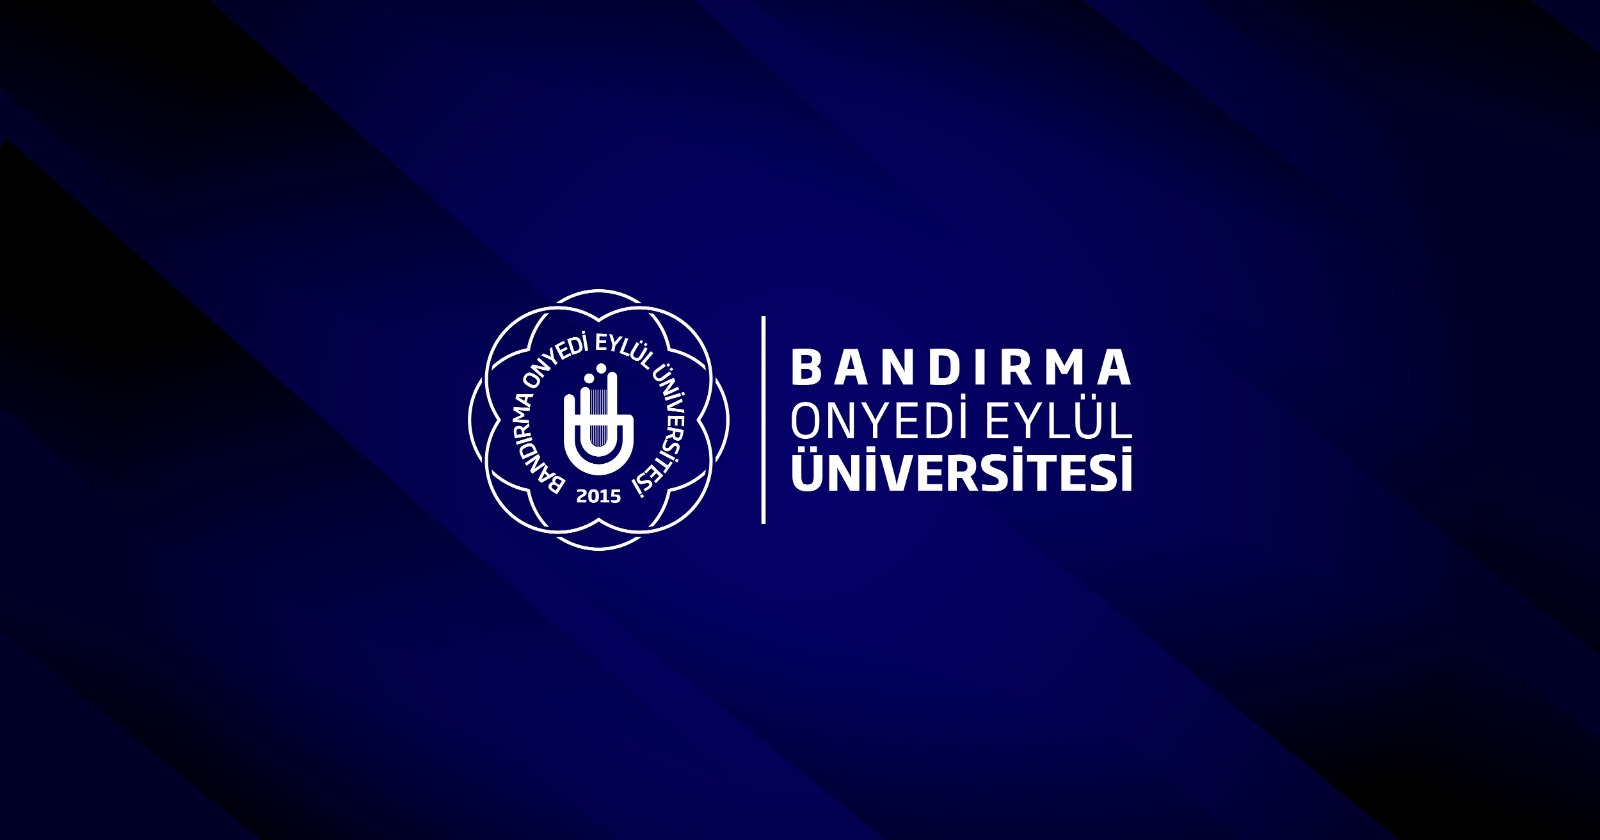 Bandırma Onyedi Eylül Üniversitesi